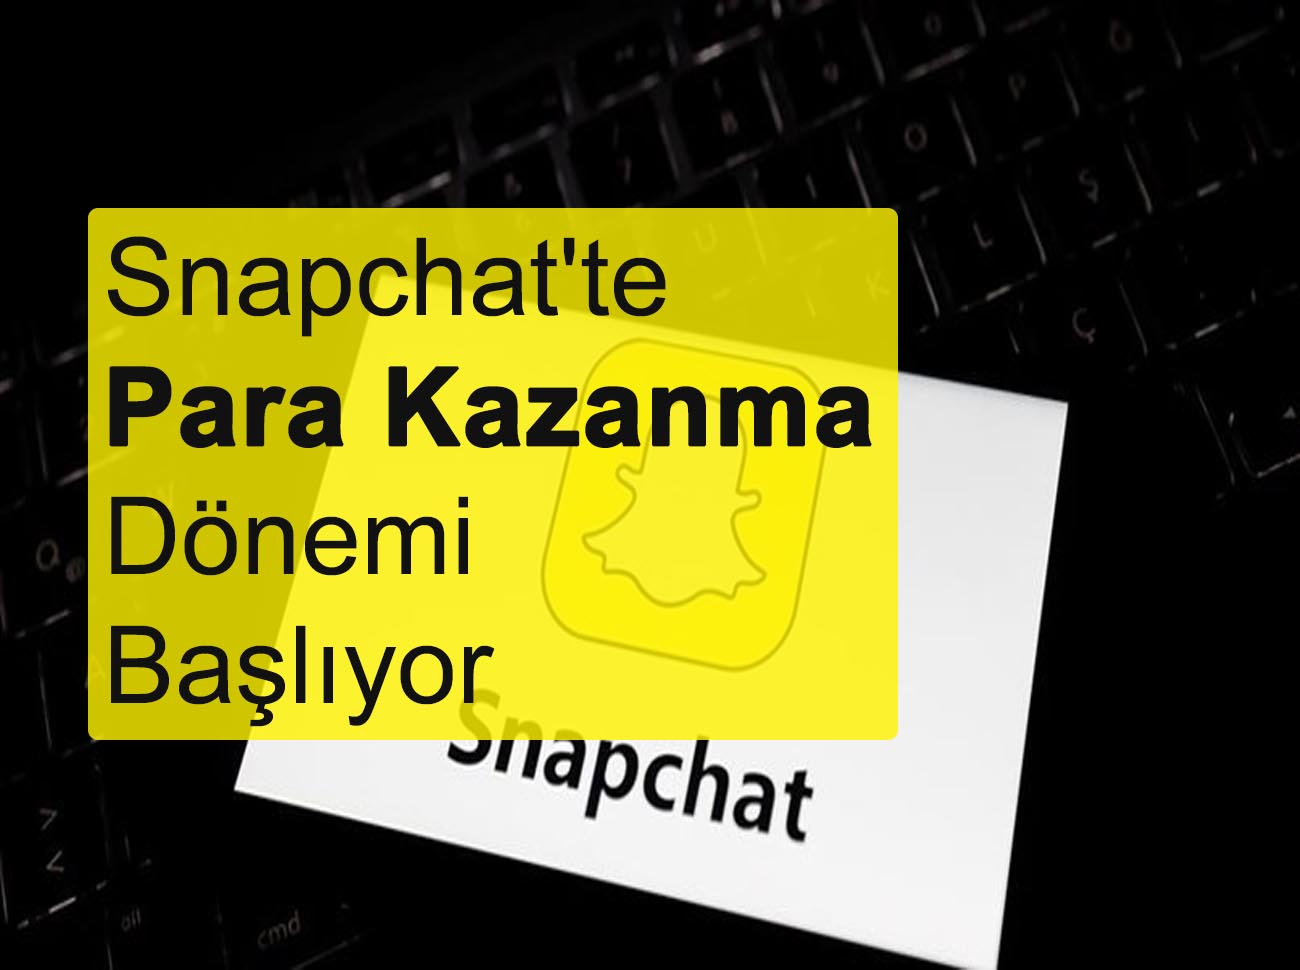 Snapchatte Para Kazanma